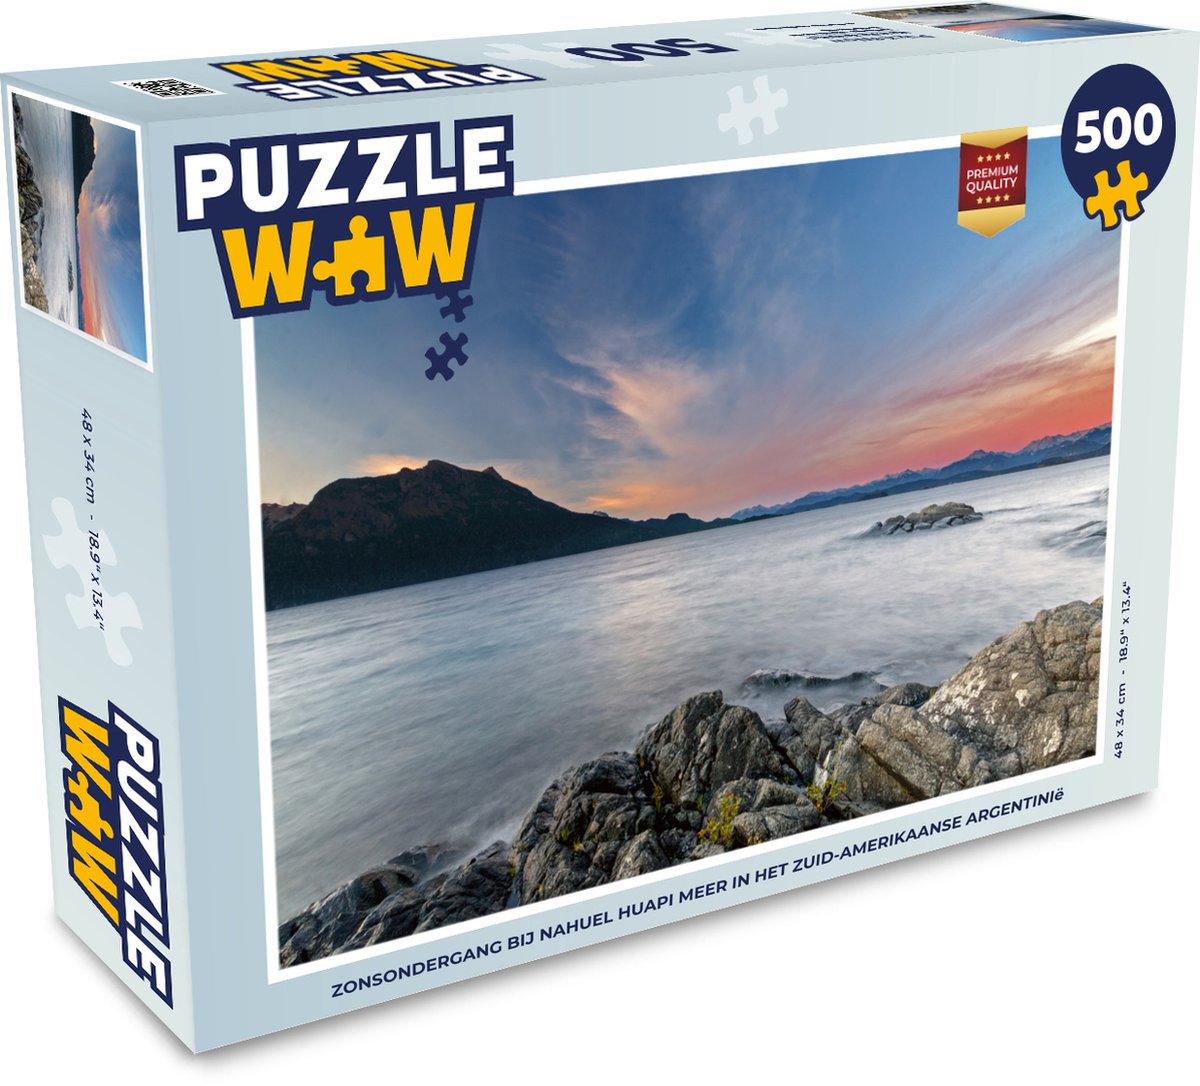 Afbeelding van product Puzzel 500 stukjes Nahuel Huapi - Zonsondergang bij Nahuel Huapi meer in het Zuid-Amerikaanse Argentinië - PuzzleWow heeft +100000 puzzels